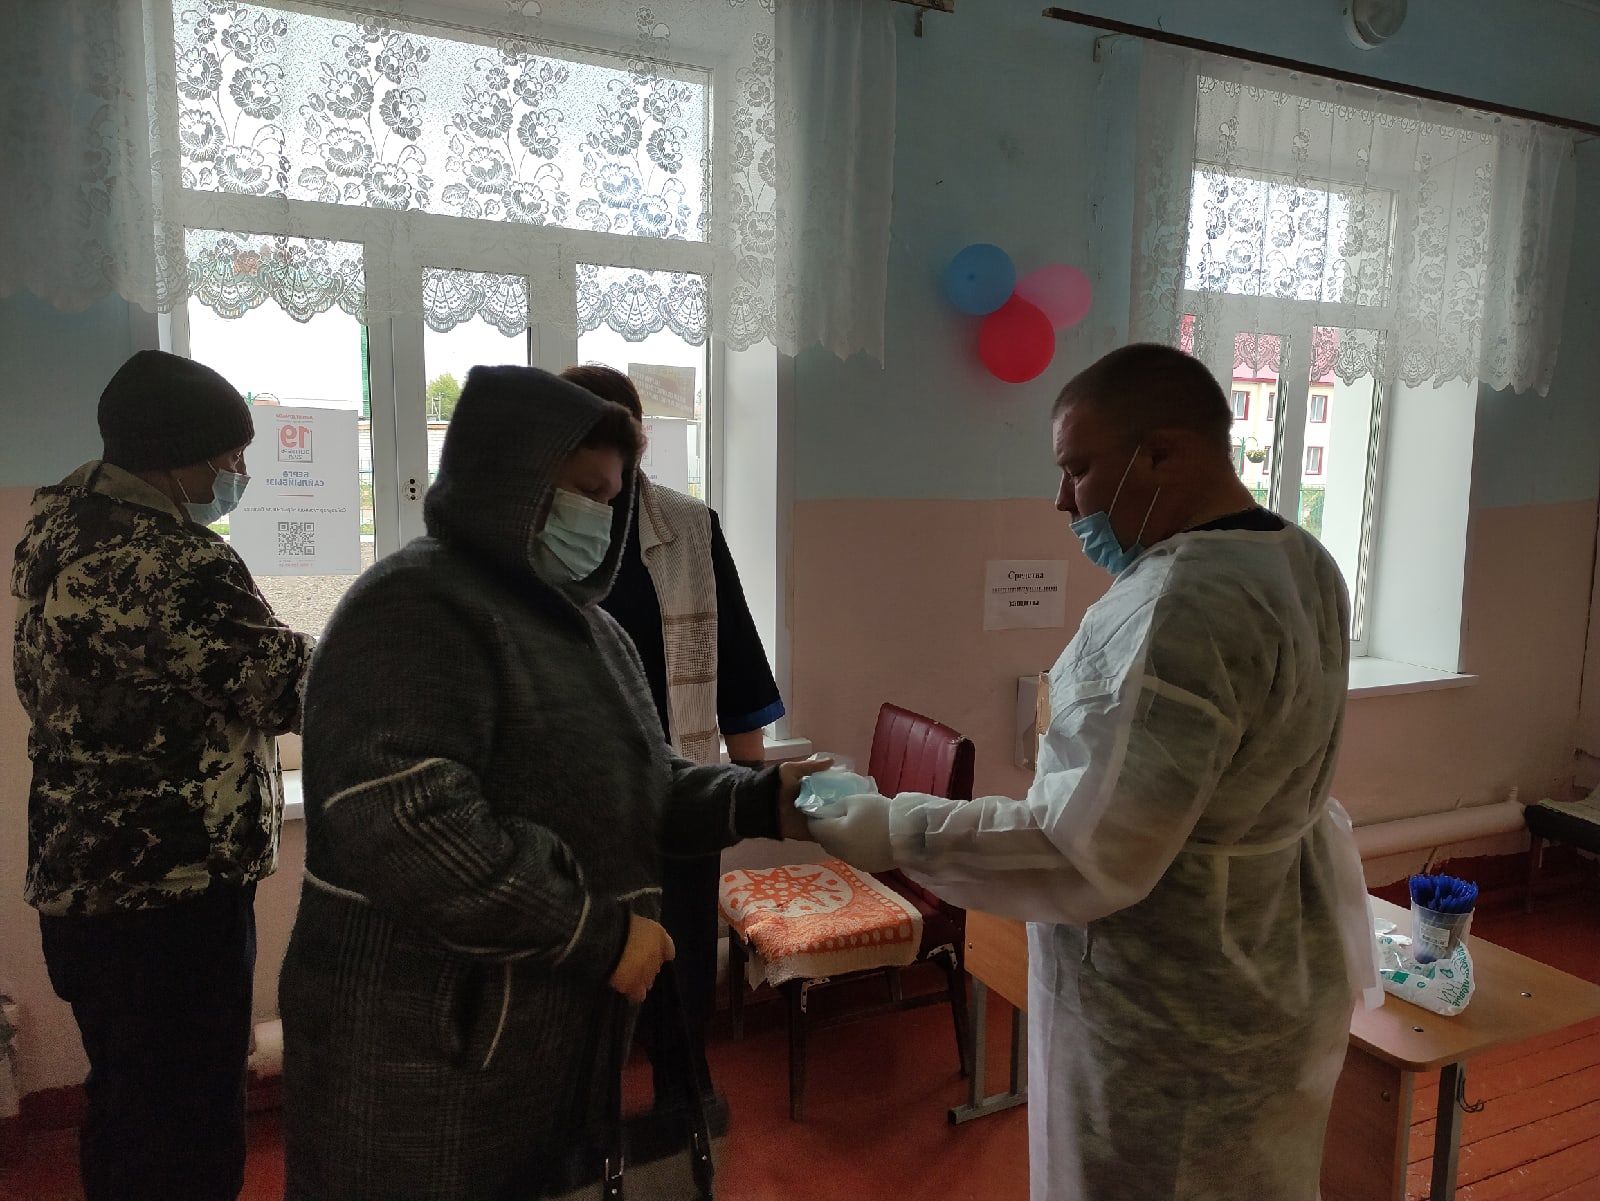 Много желающих проголосовать с утра было на избирательном участке №2586, расположенном в Тетюшской школе №2